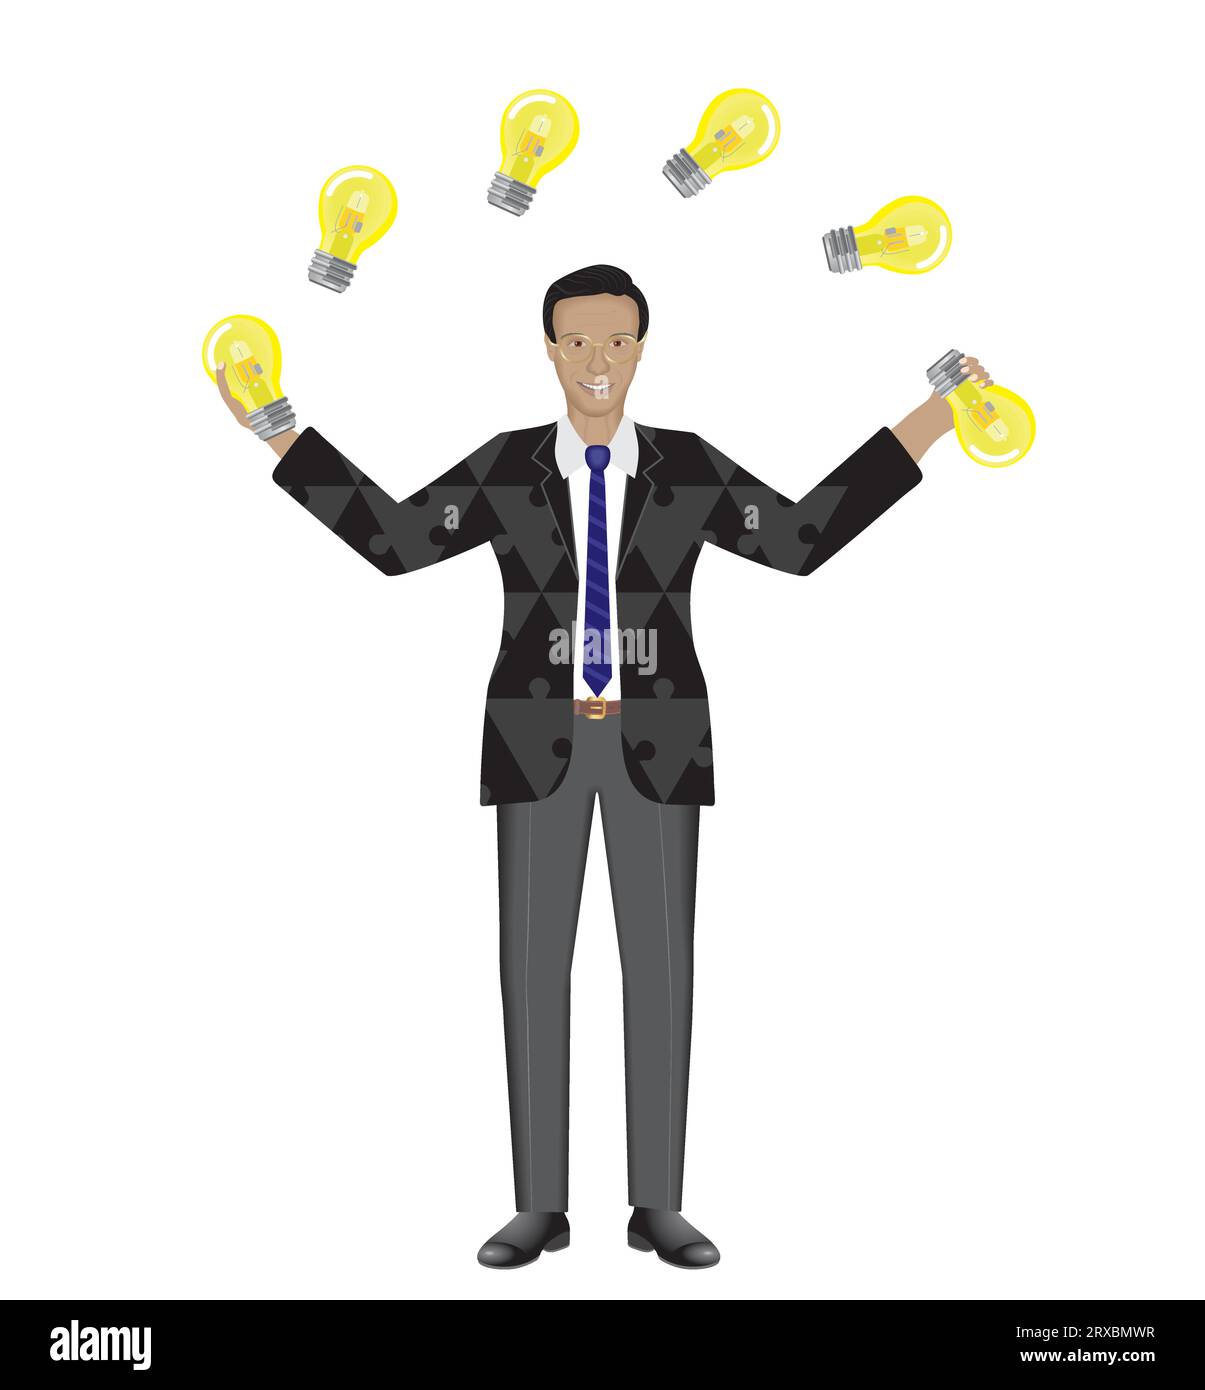 Homme jonglant avec des ampoules. Multitâche, coordination. Costume avec motif de pièces de puzzle. Isolé. Illustration vectorielle. Illustration de Vecteur